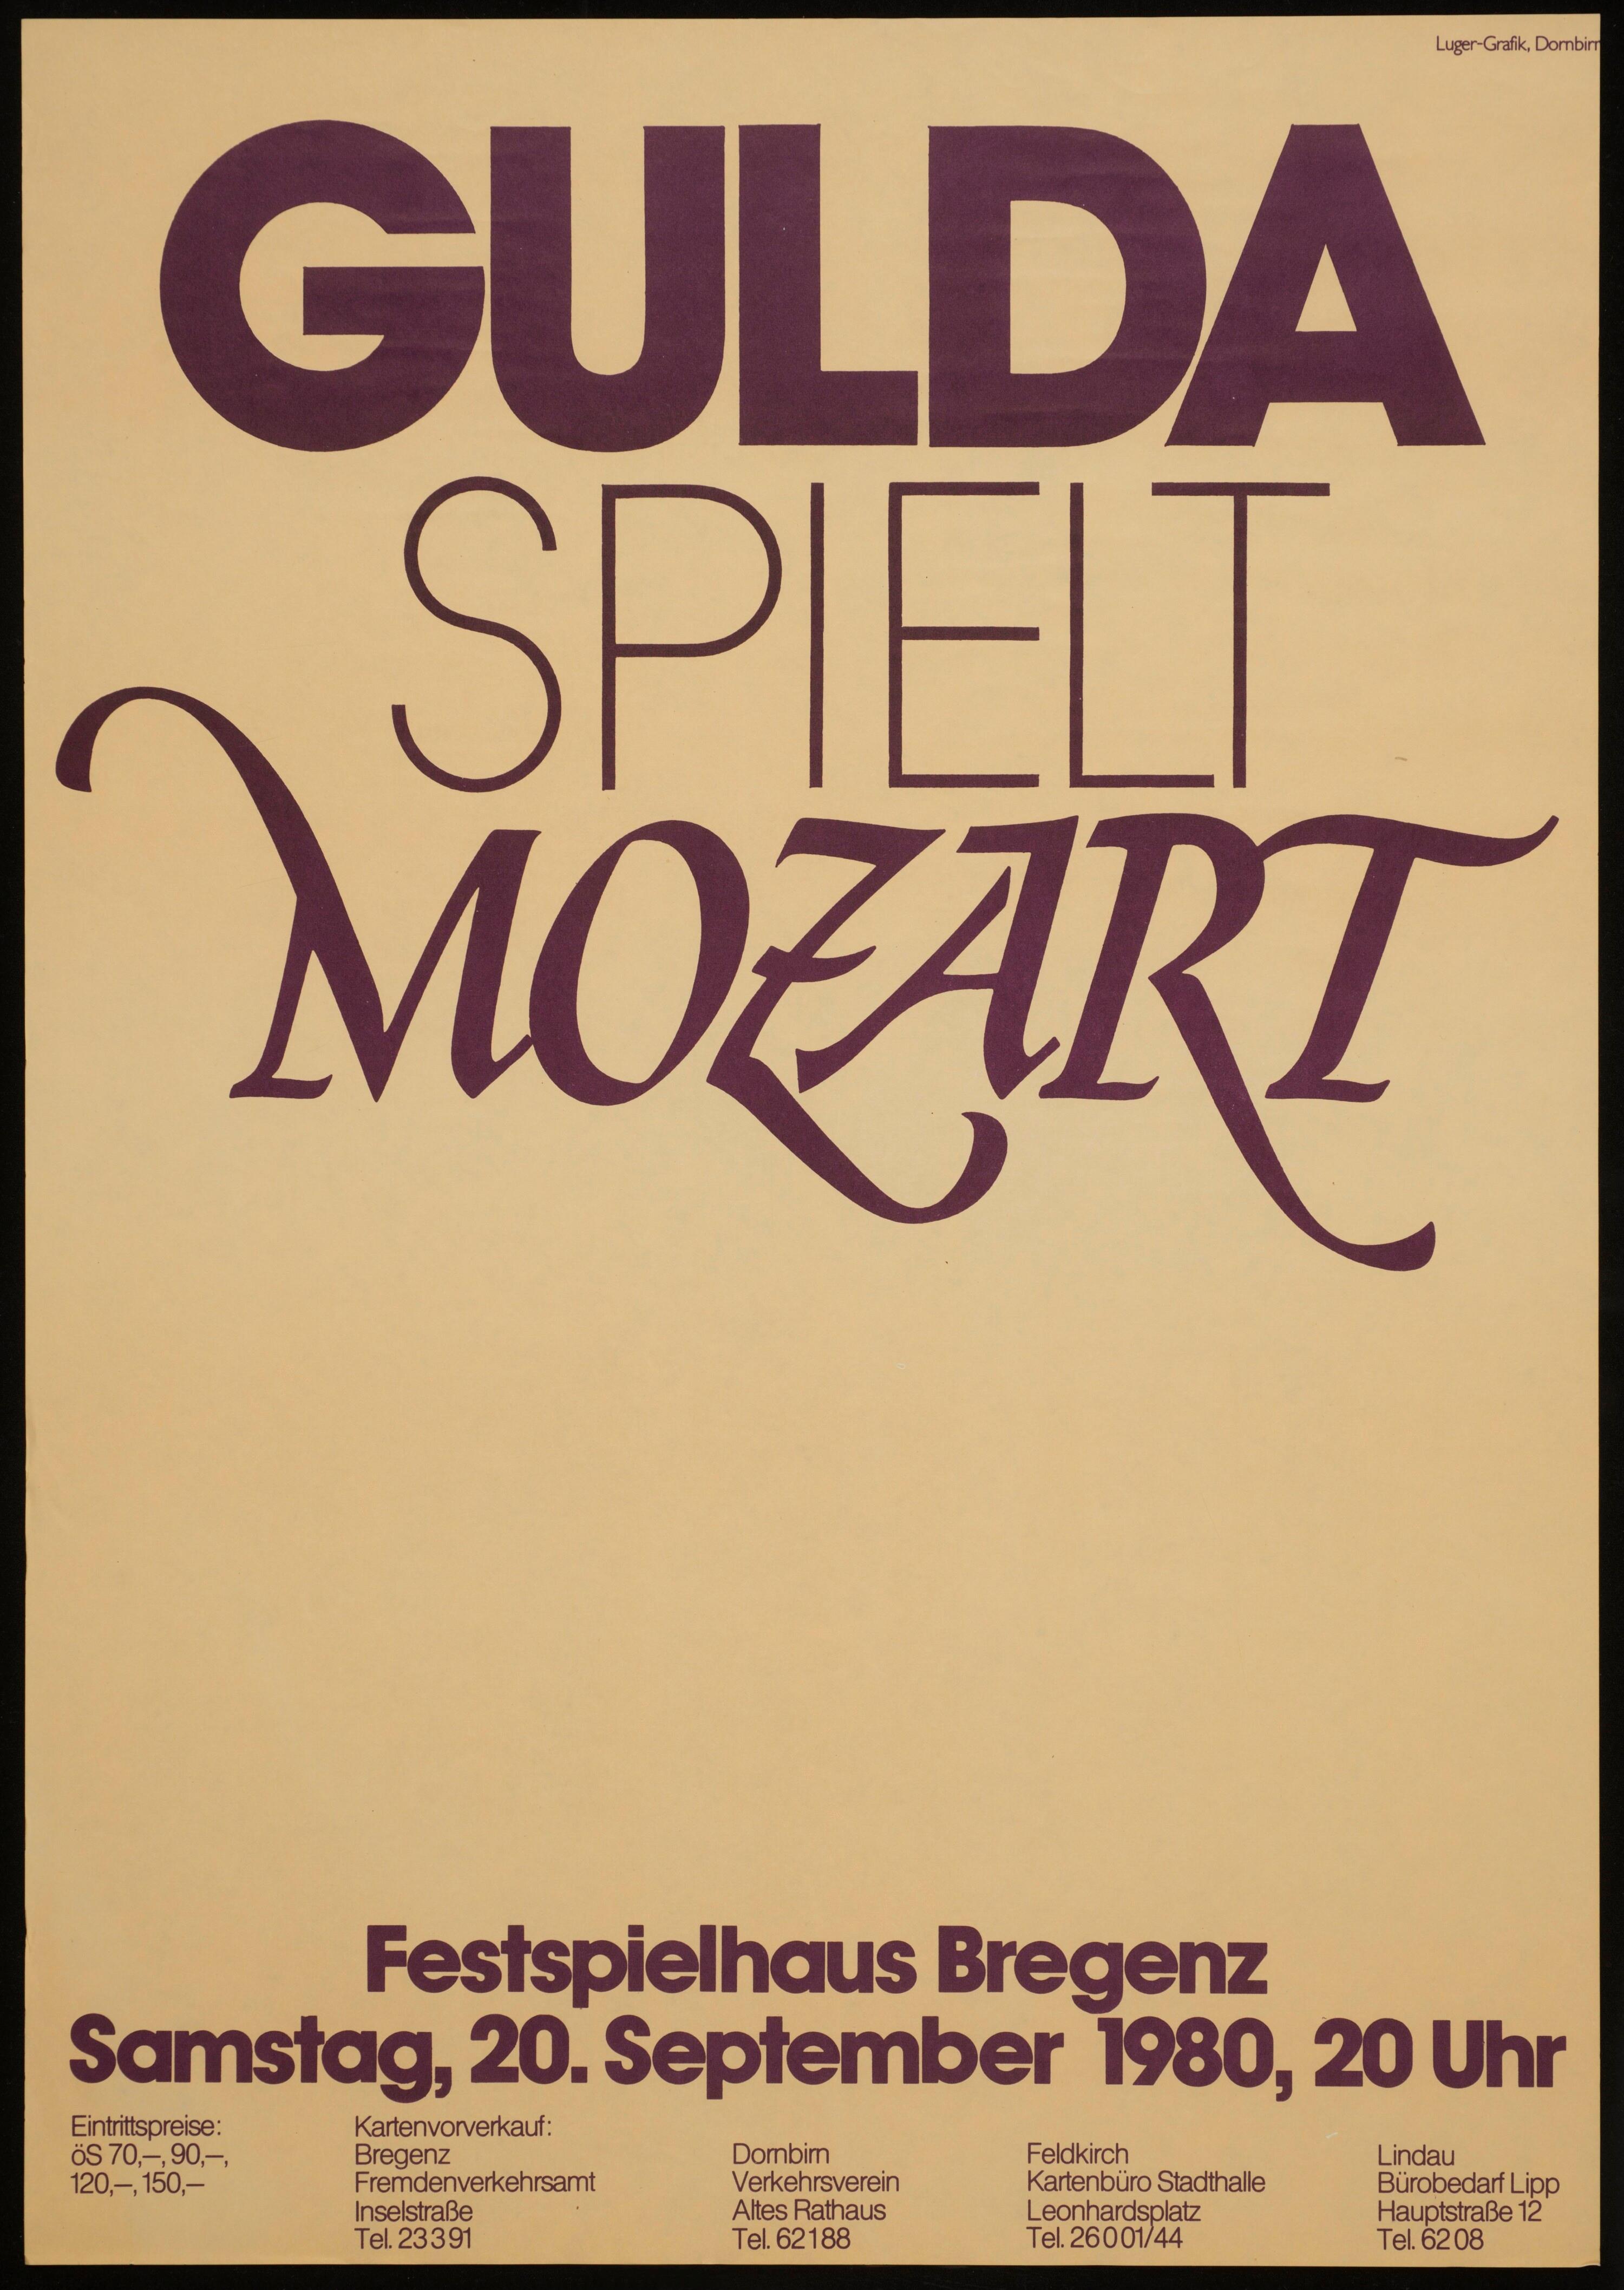 Gulda spielt Mozart></div>


    <hr>
    <div class=